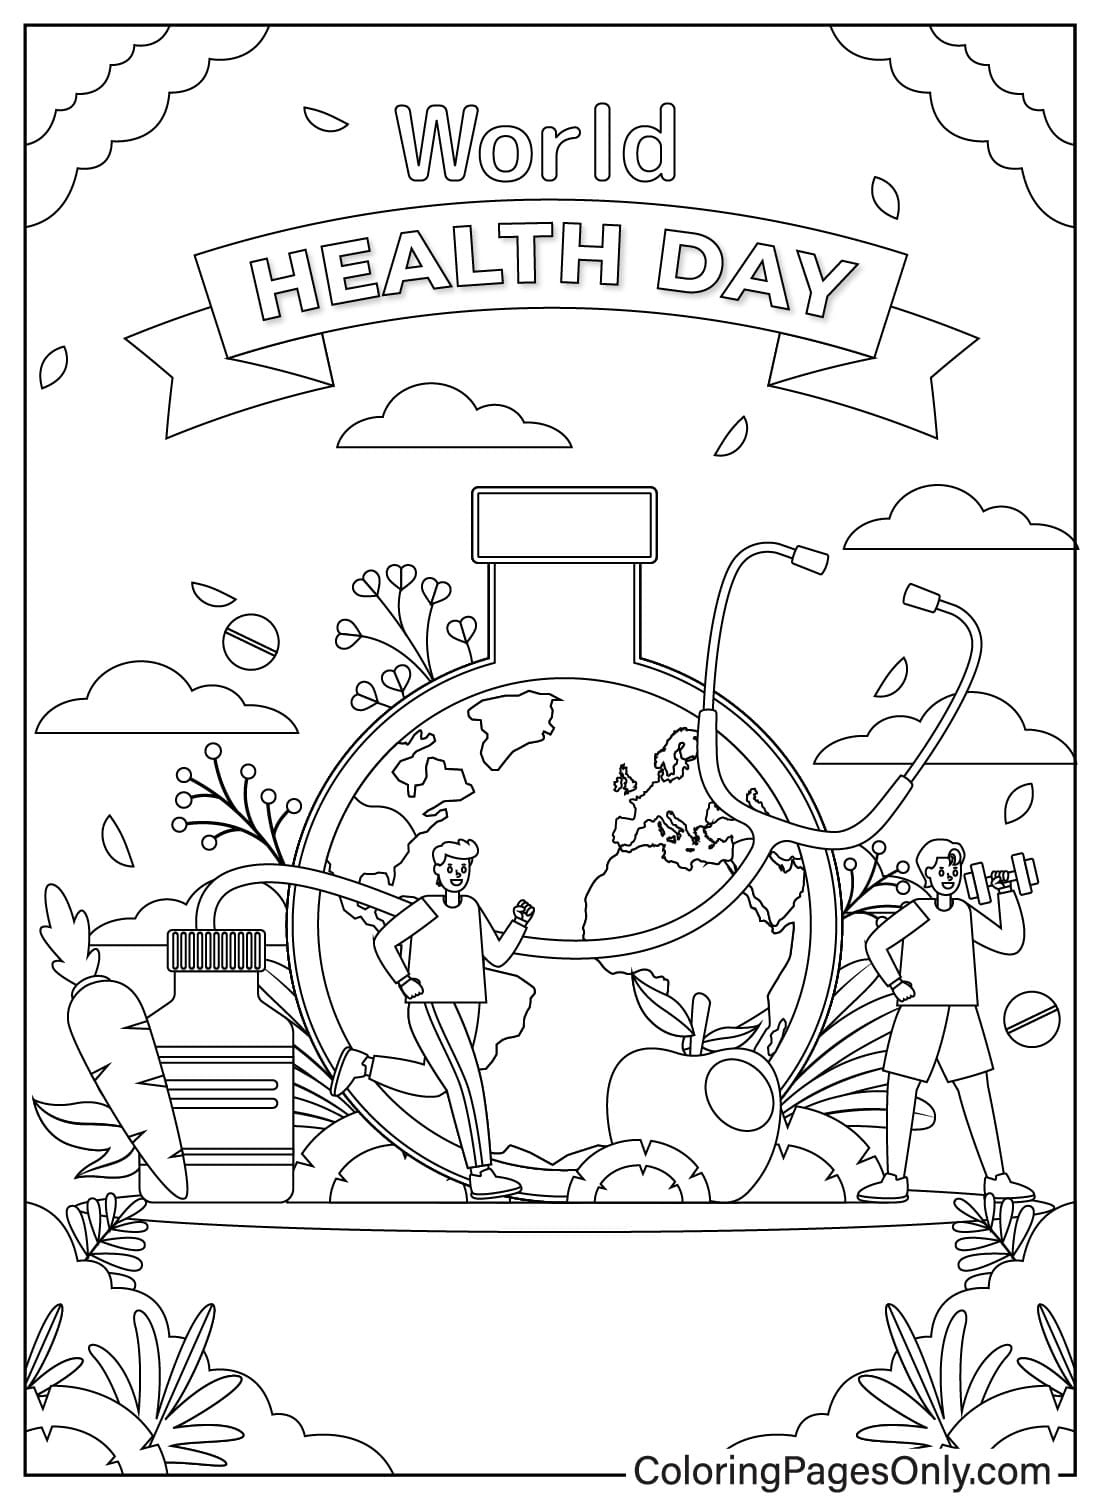 رسم توضيحي بخط رسومي ليوم الصحة العالمي من يوم الصحة العالمي